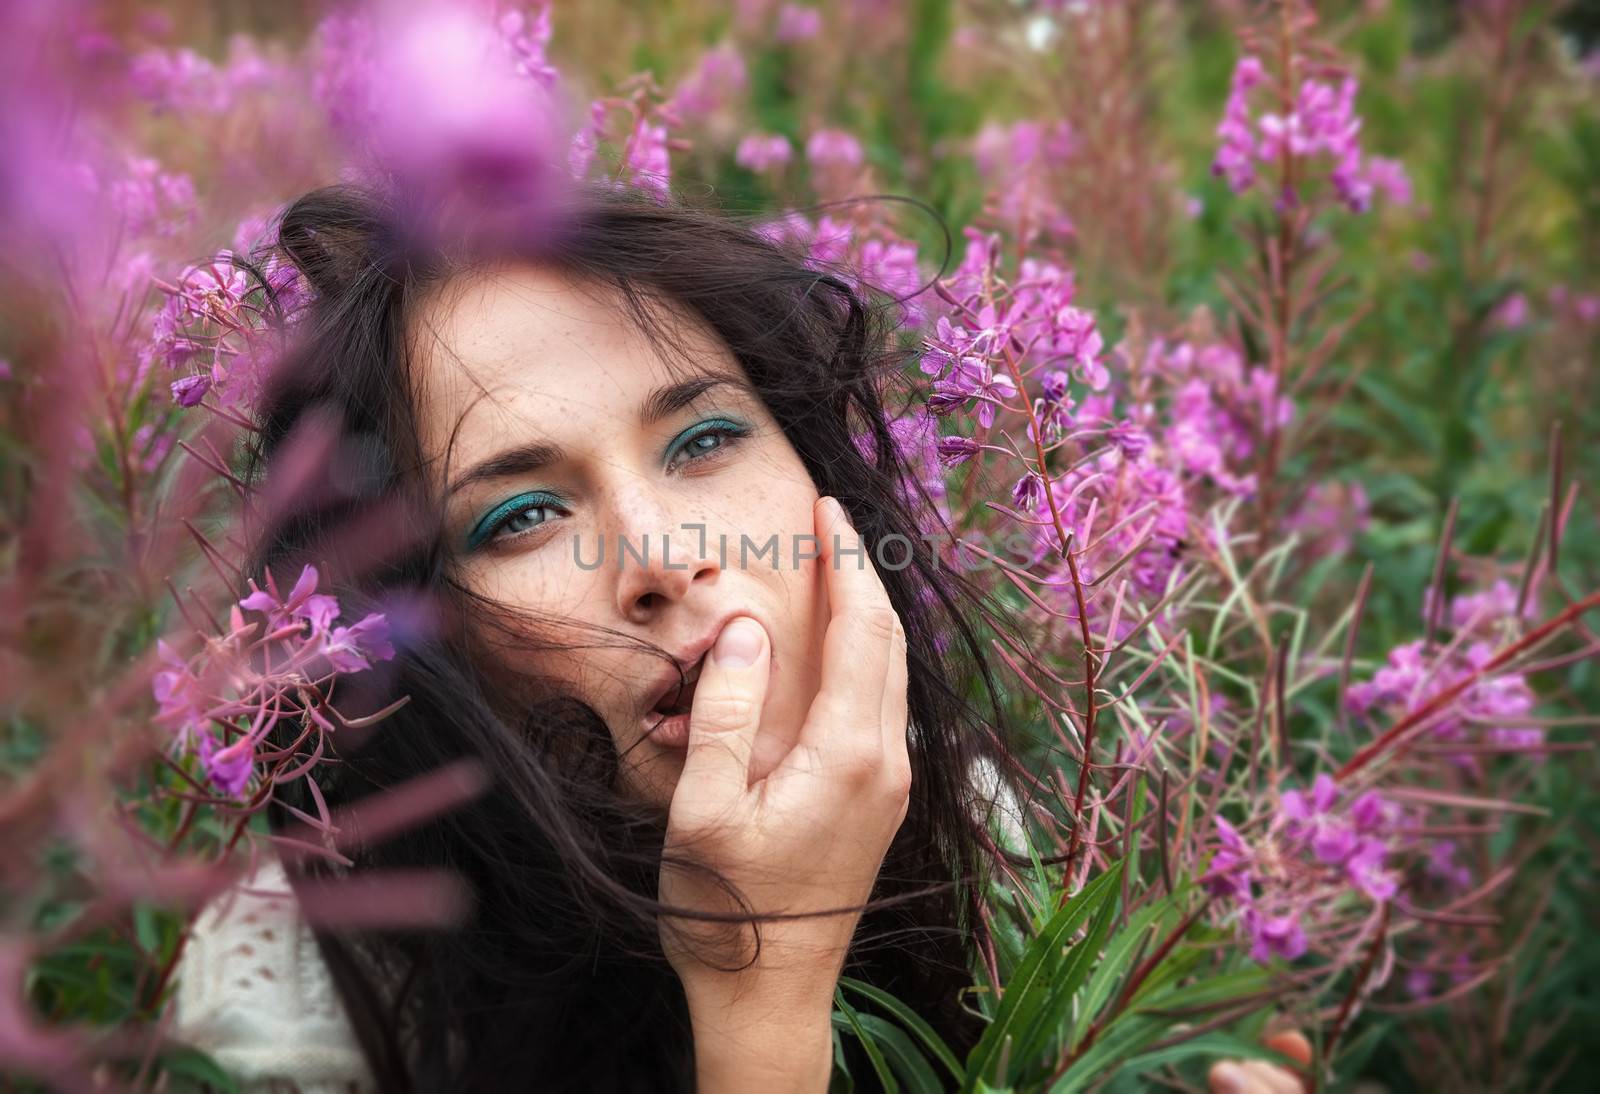 beautiful girl among the flowers by palinchak